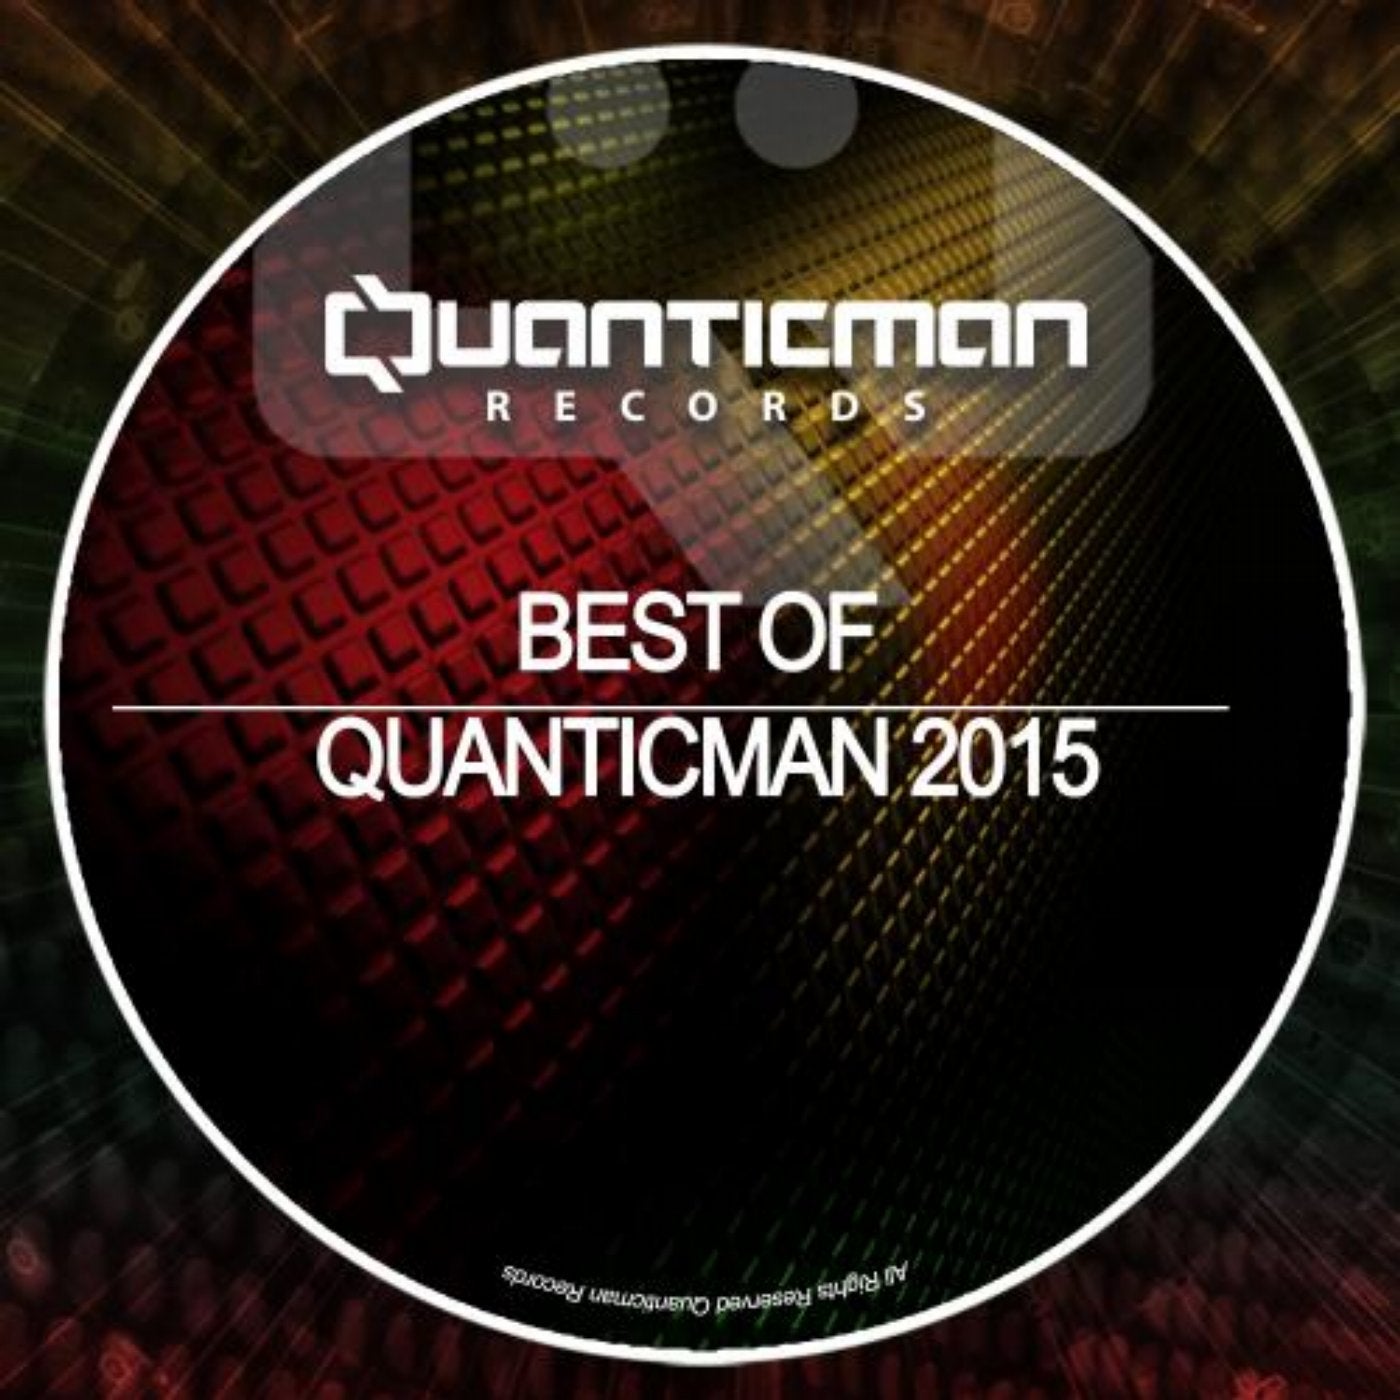 Best of Quanticman